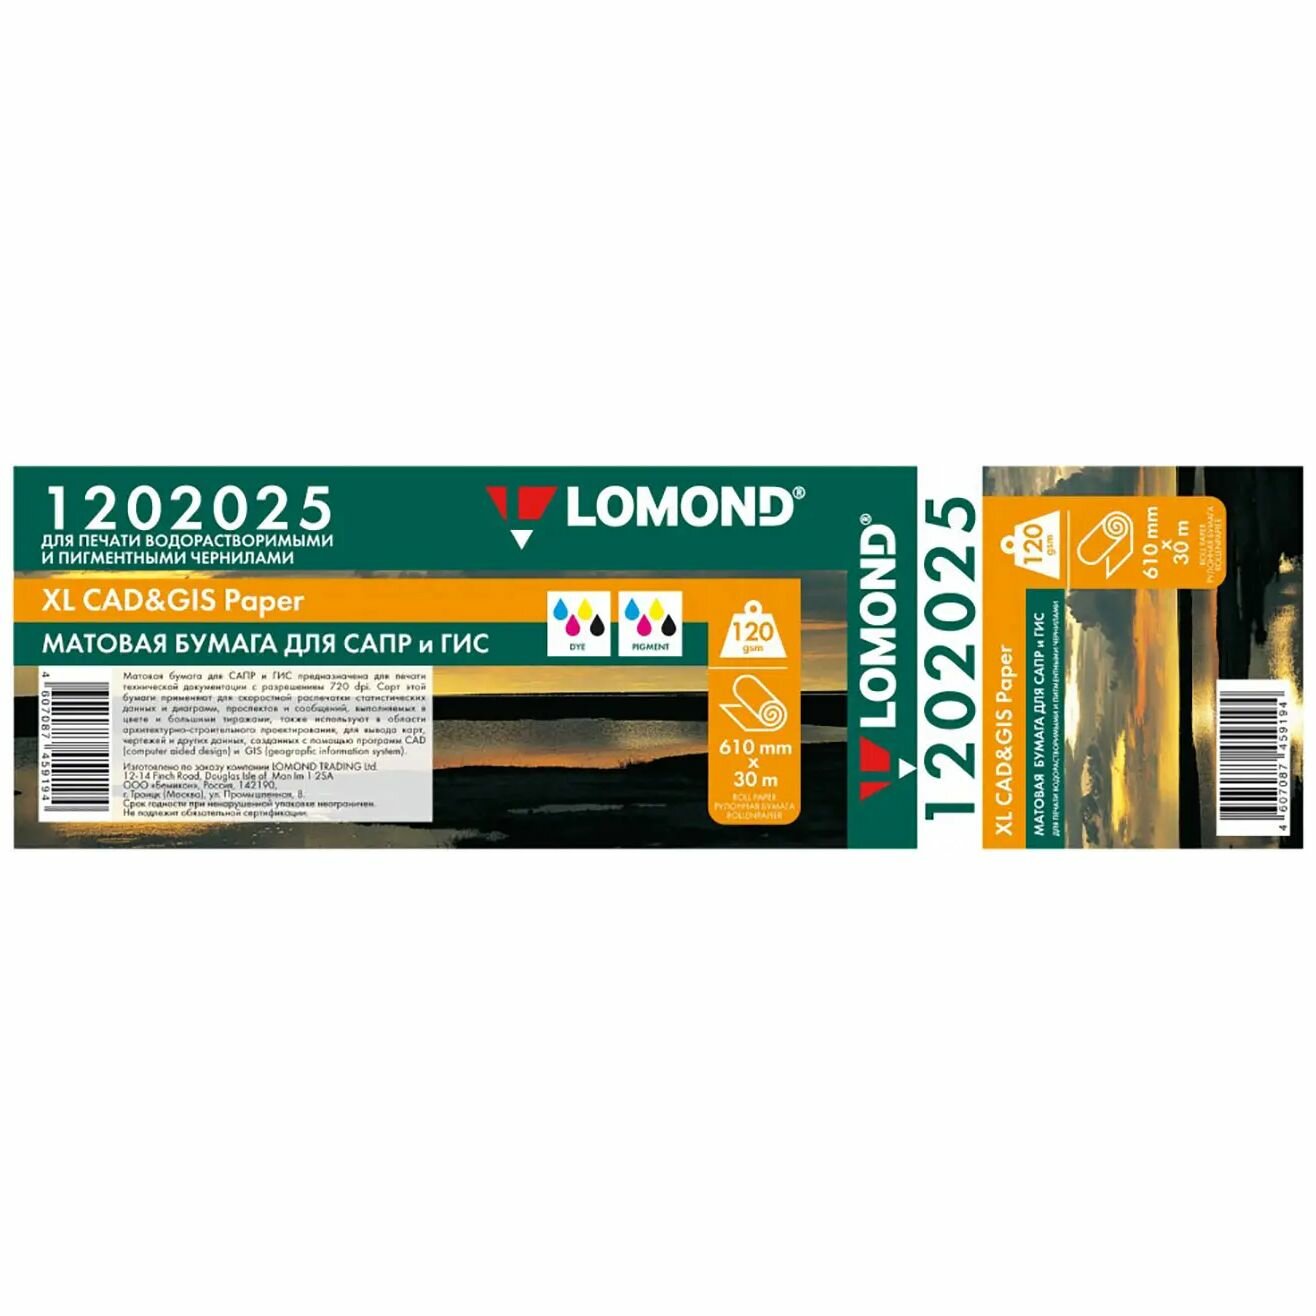 Бумага Lomond A1, 24" для САПР и ГИС 610мм-30м, 120 г/м2 матовая, 50,8мм (2") 1202025